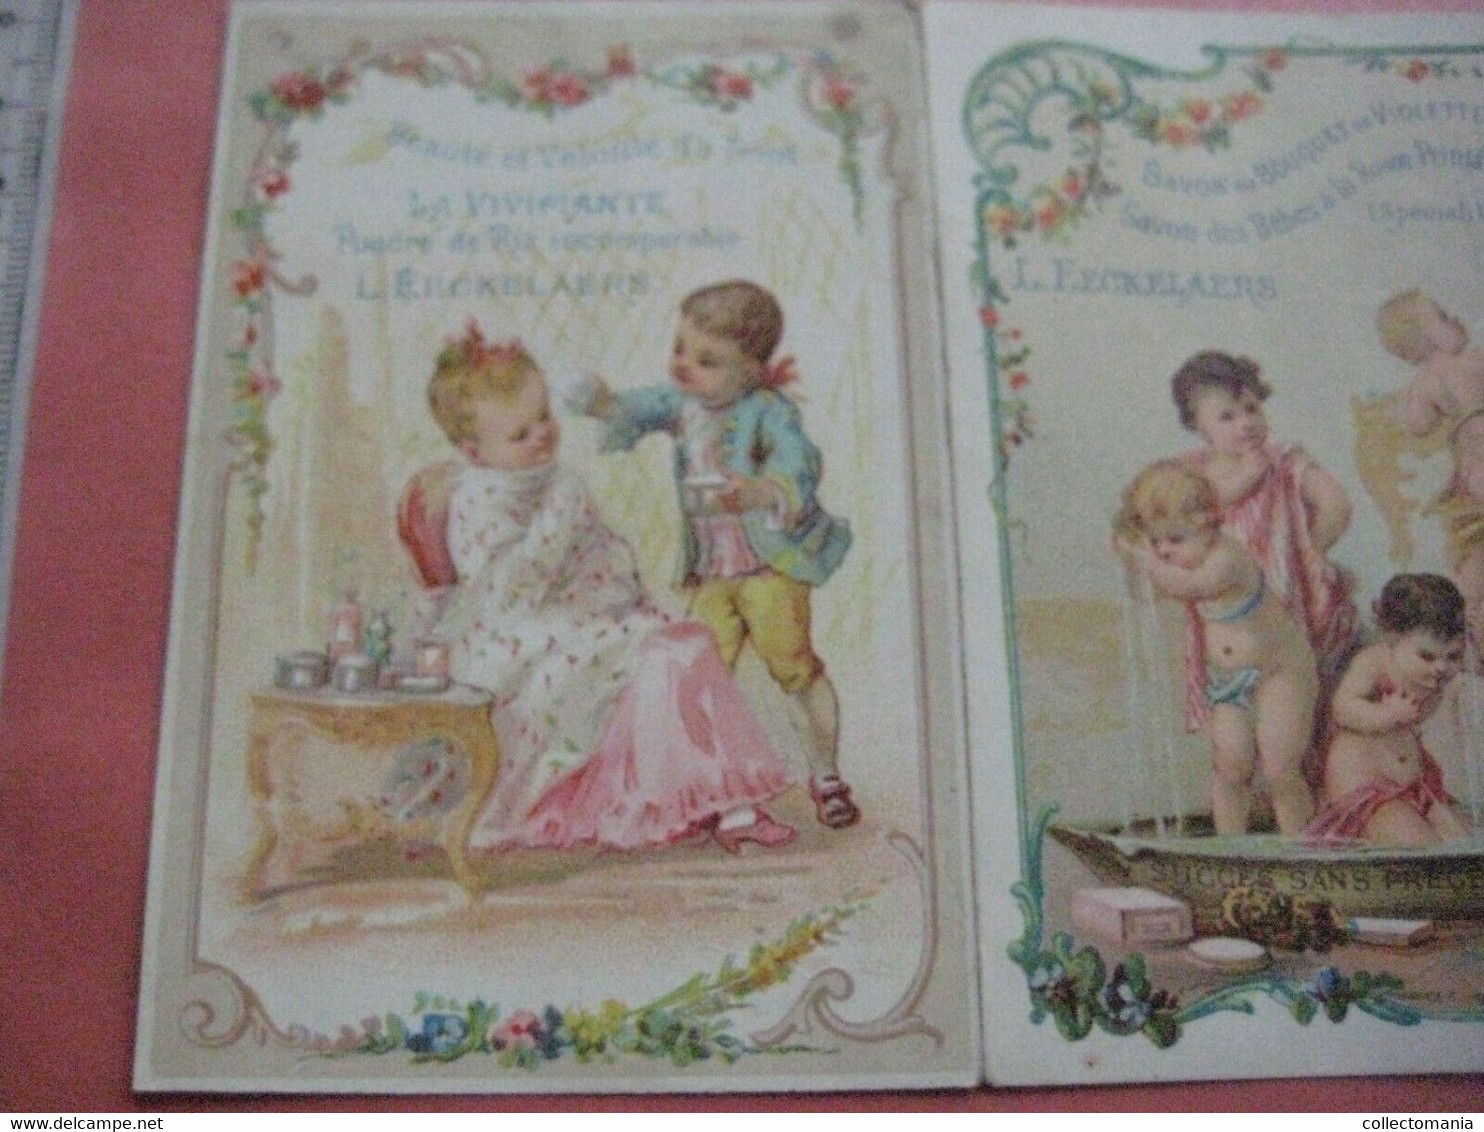 1889 Eeckelaers CHERUB Powder Talcum Baby perfume TRIPLE litho card Excellent parfumerie Savonne Extraits 3-vouwer